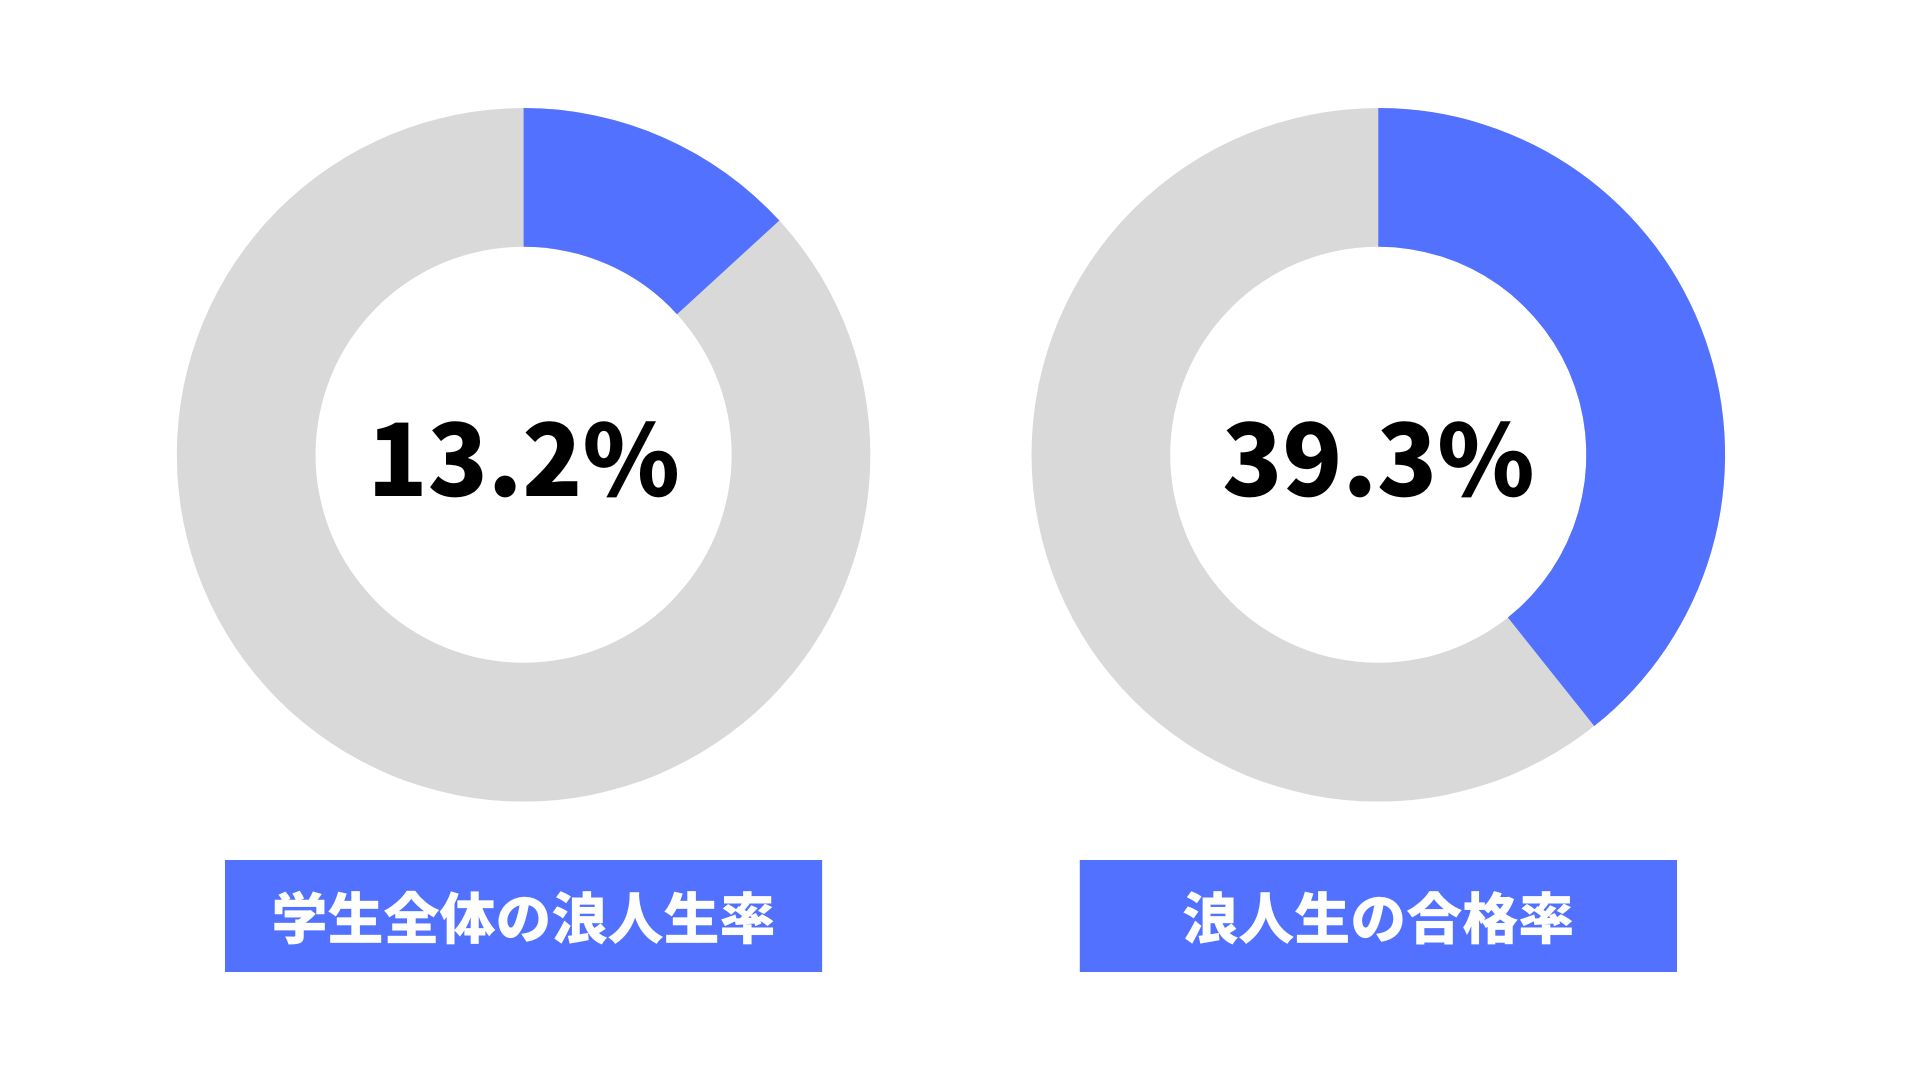 関西学院大学の浪人生の割合